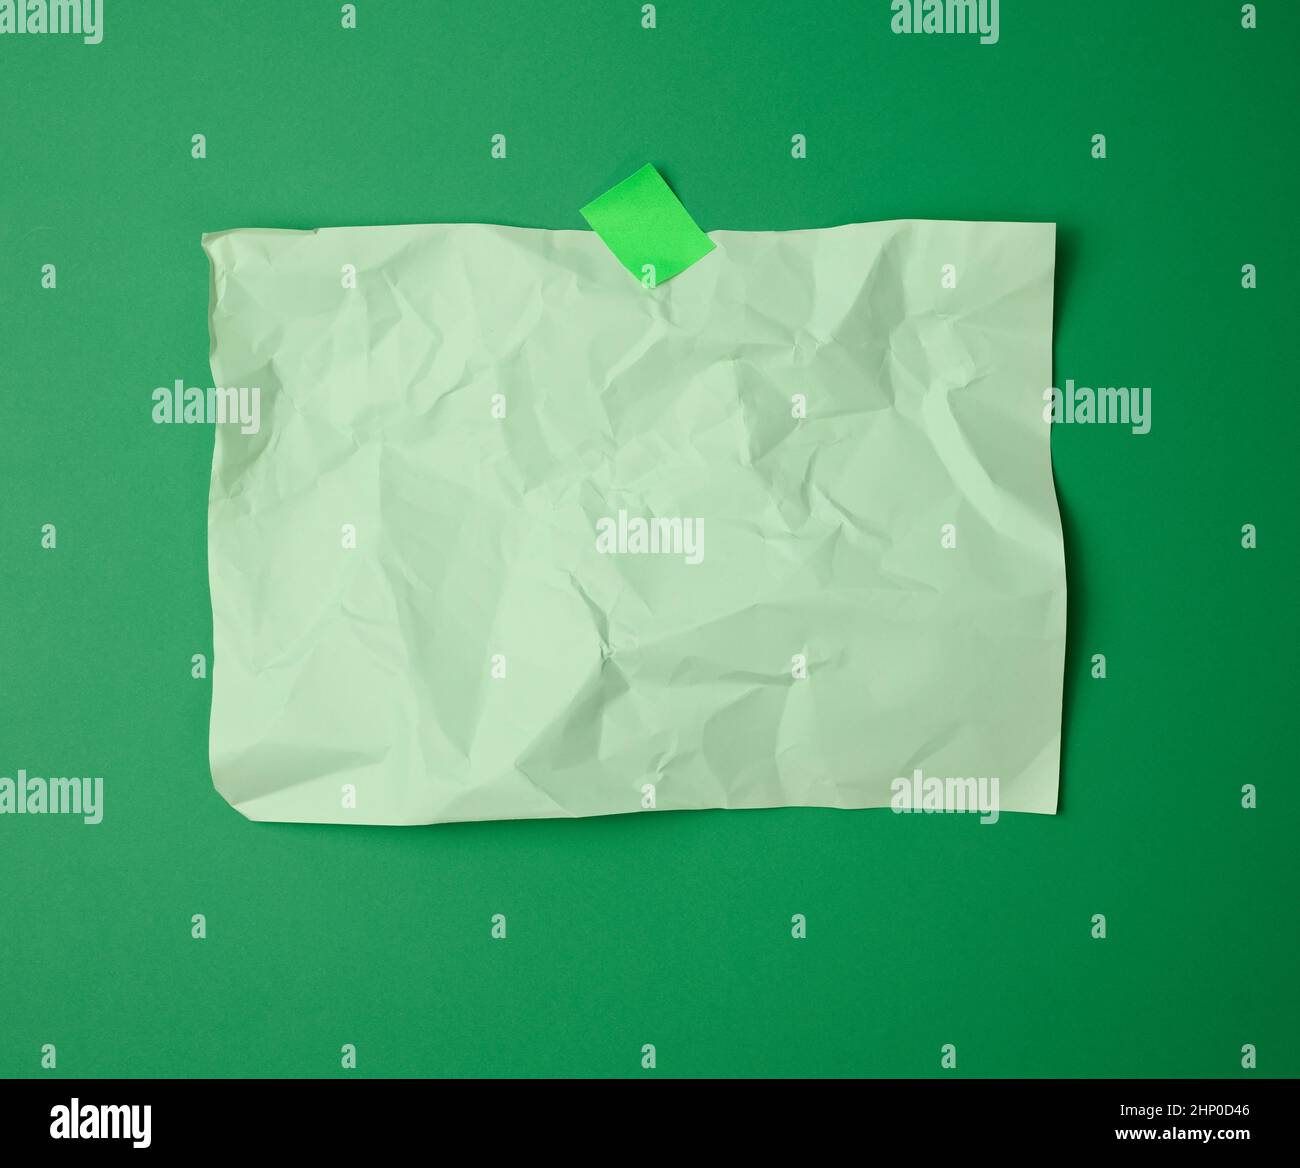 foglio di carta verde bianco, rettangolare, sgualcito, incollato con carta verde appiccicosa su sfondo verde Foto Stock